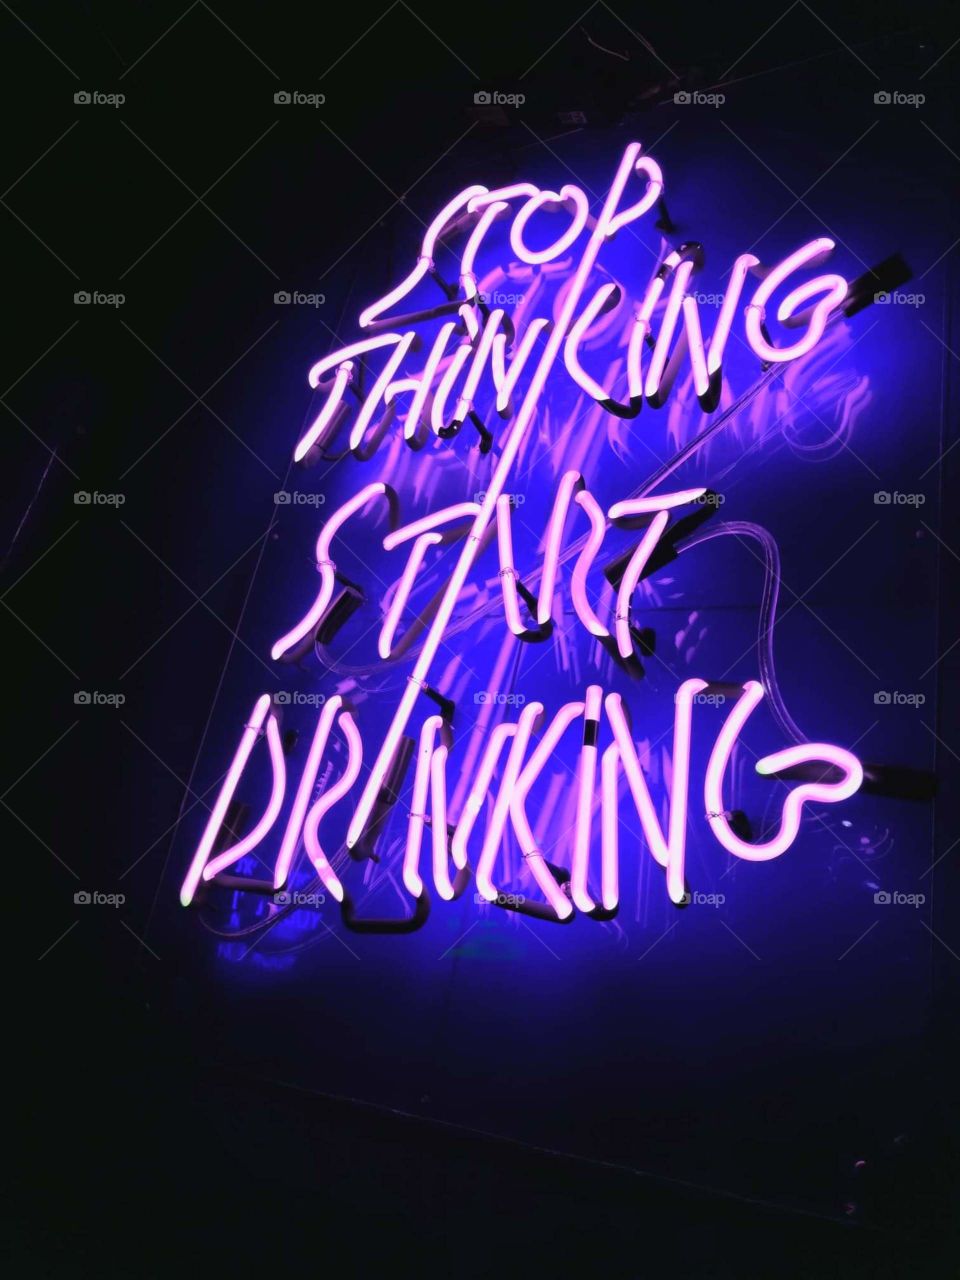 stop thinking start drinking